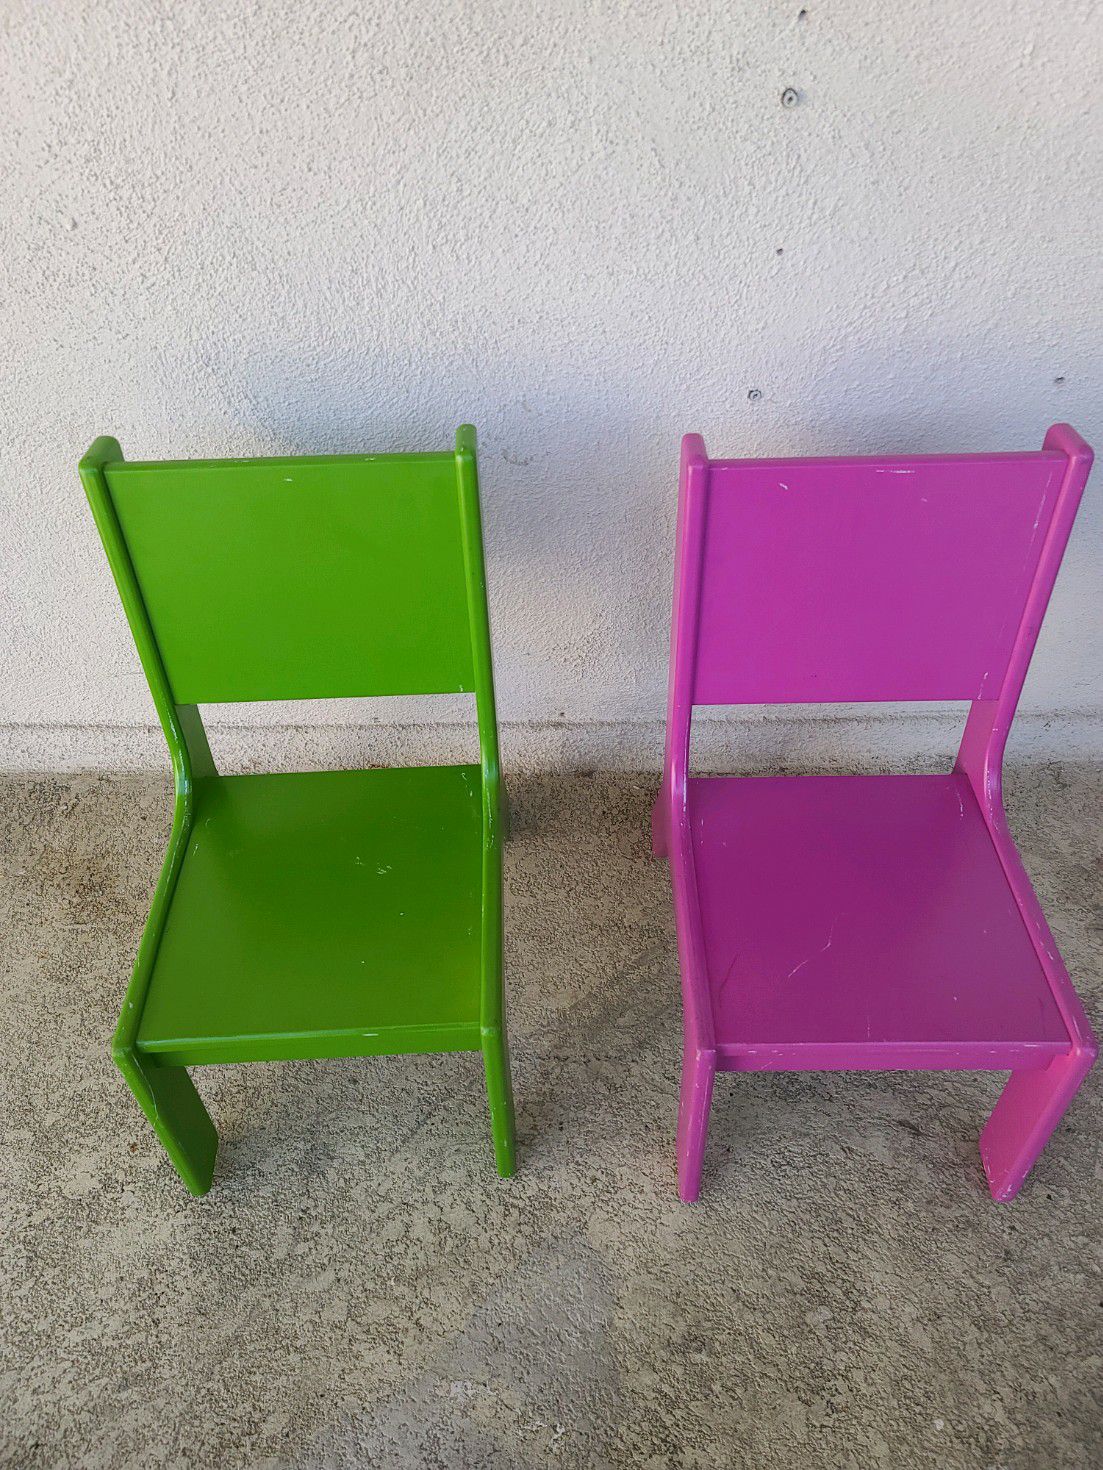 Sodura Aero Kids Chairs